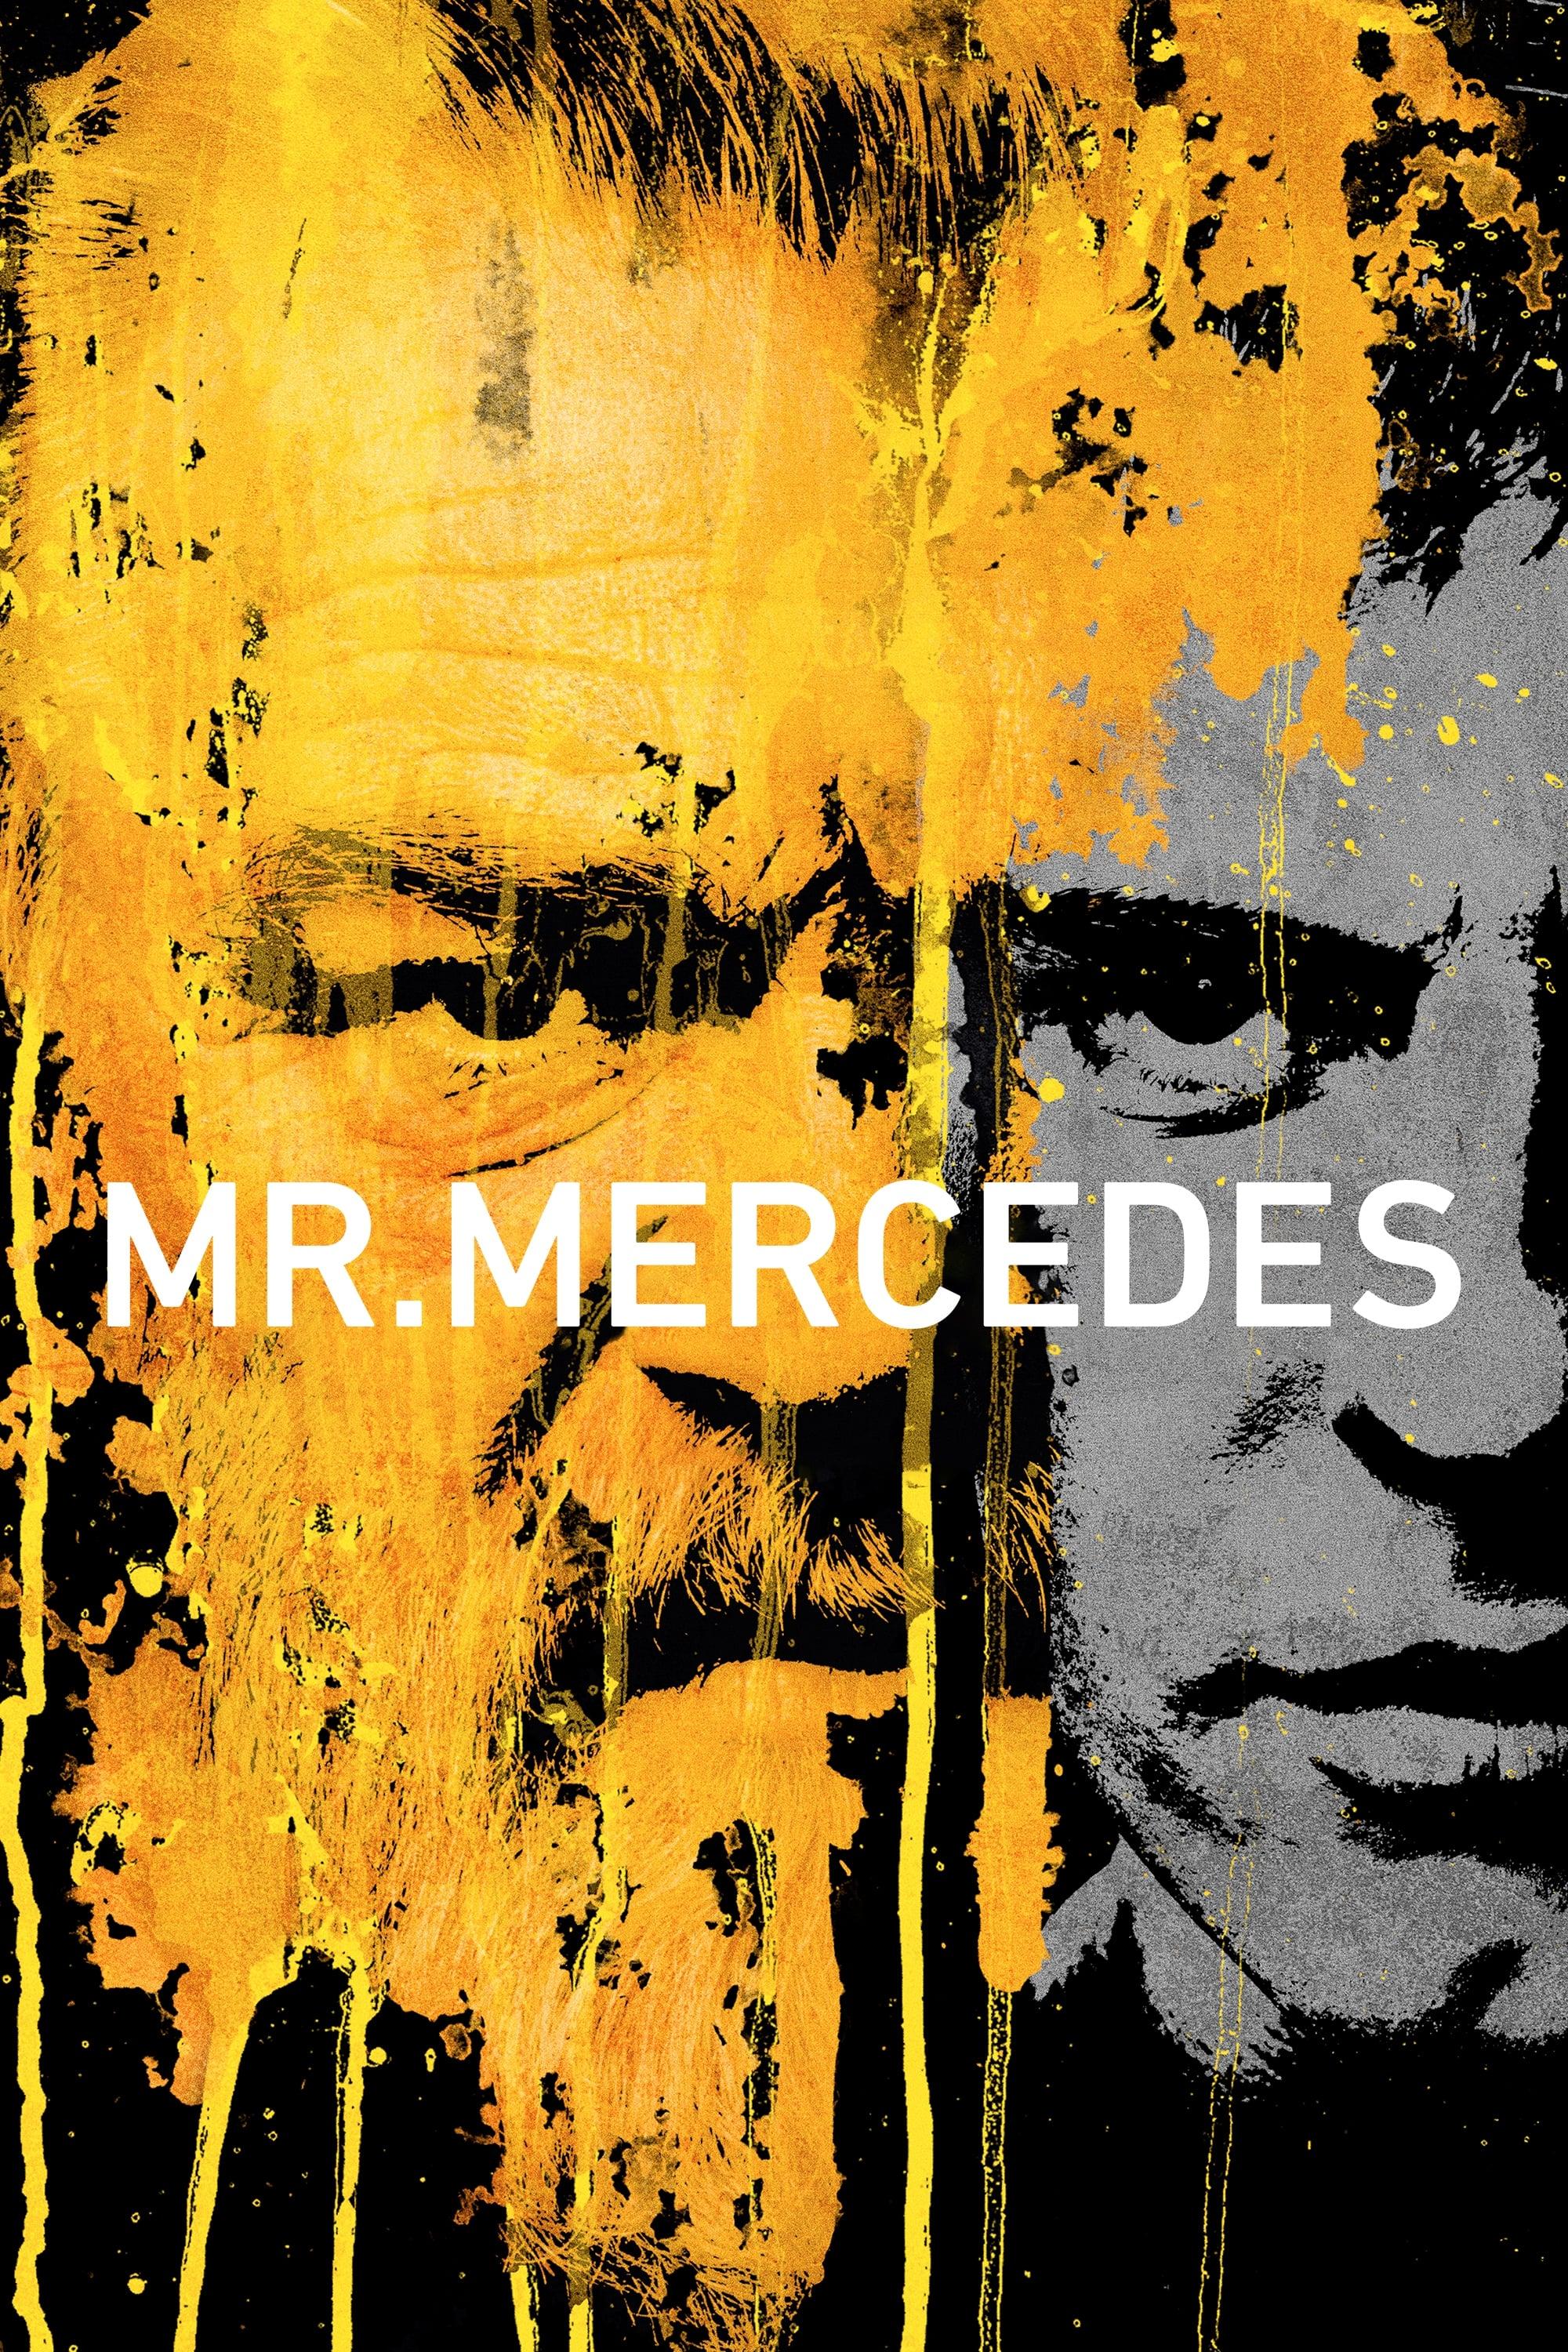 Mr. Mercedes poster